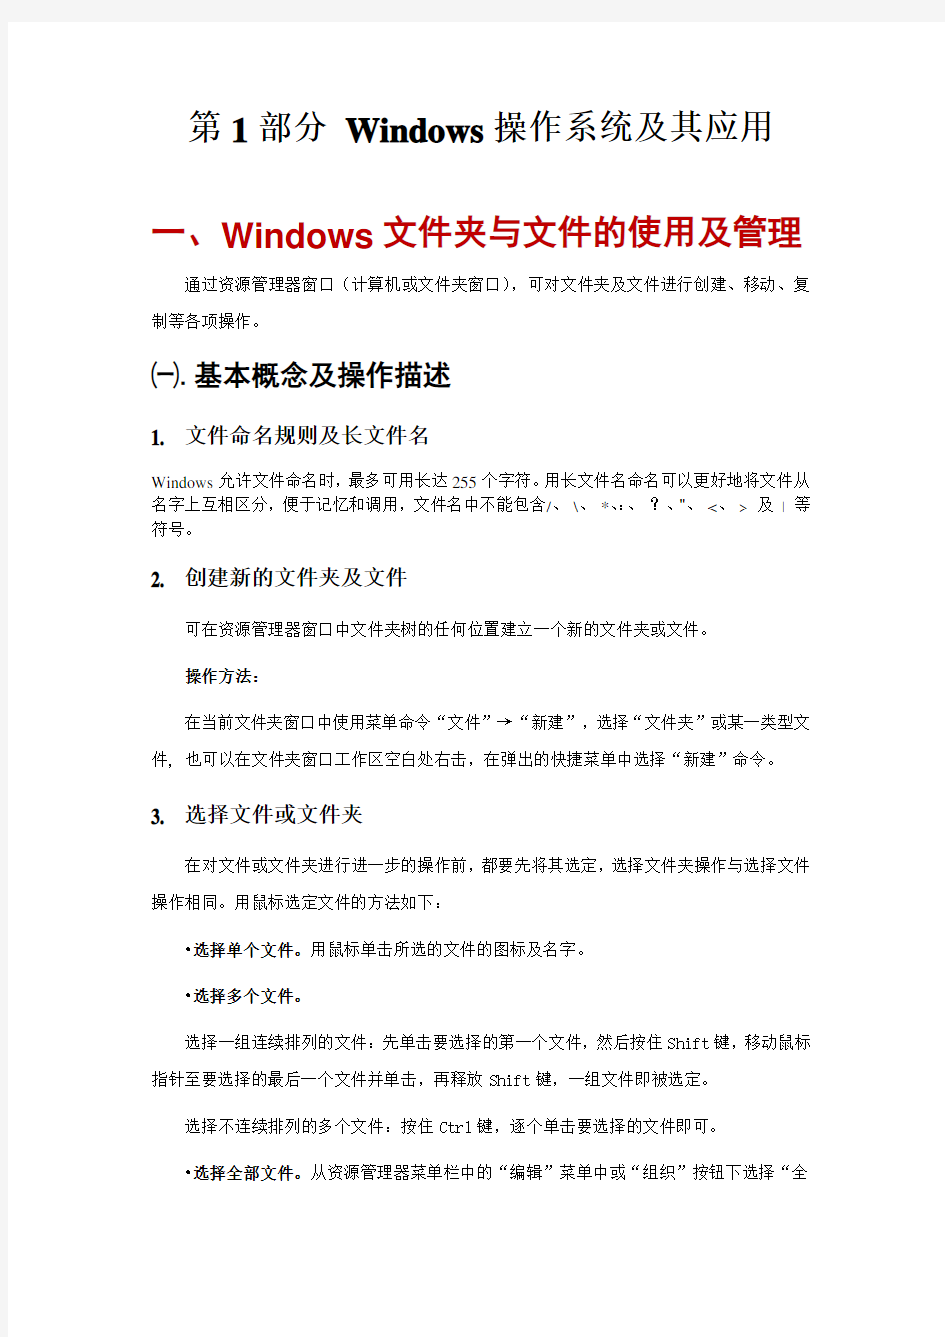 Windows7教案